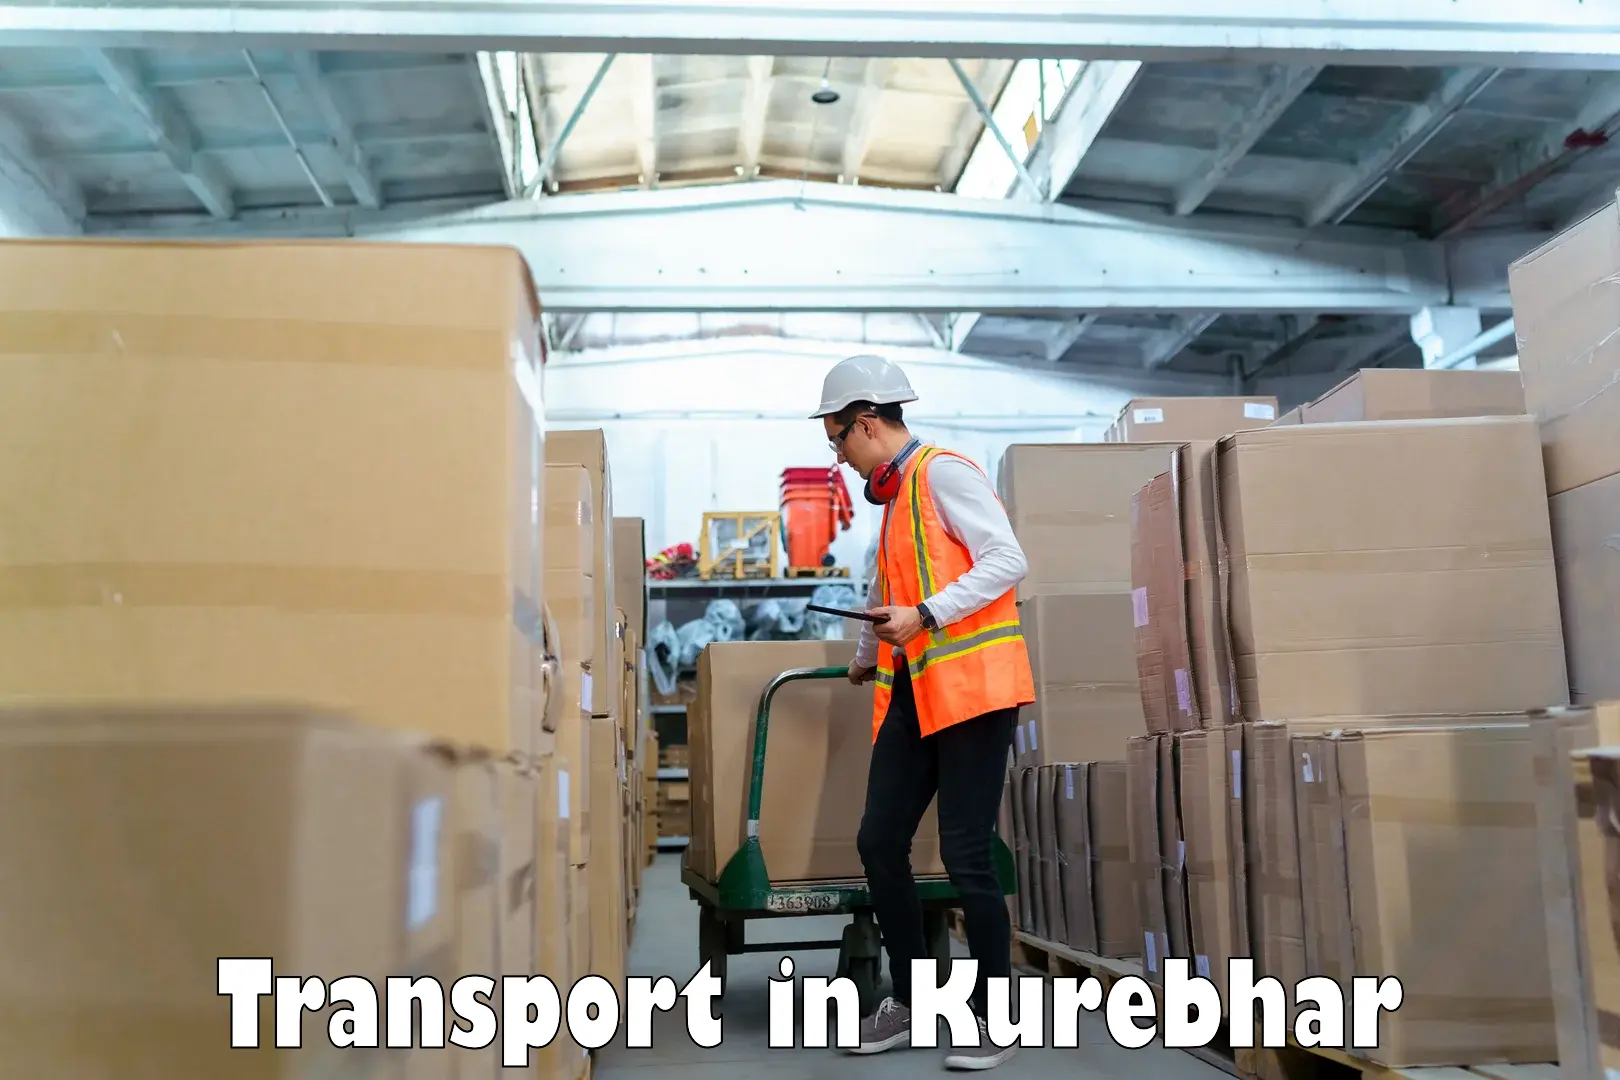 Parcel transport services in Kurebhar